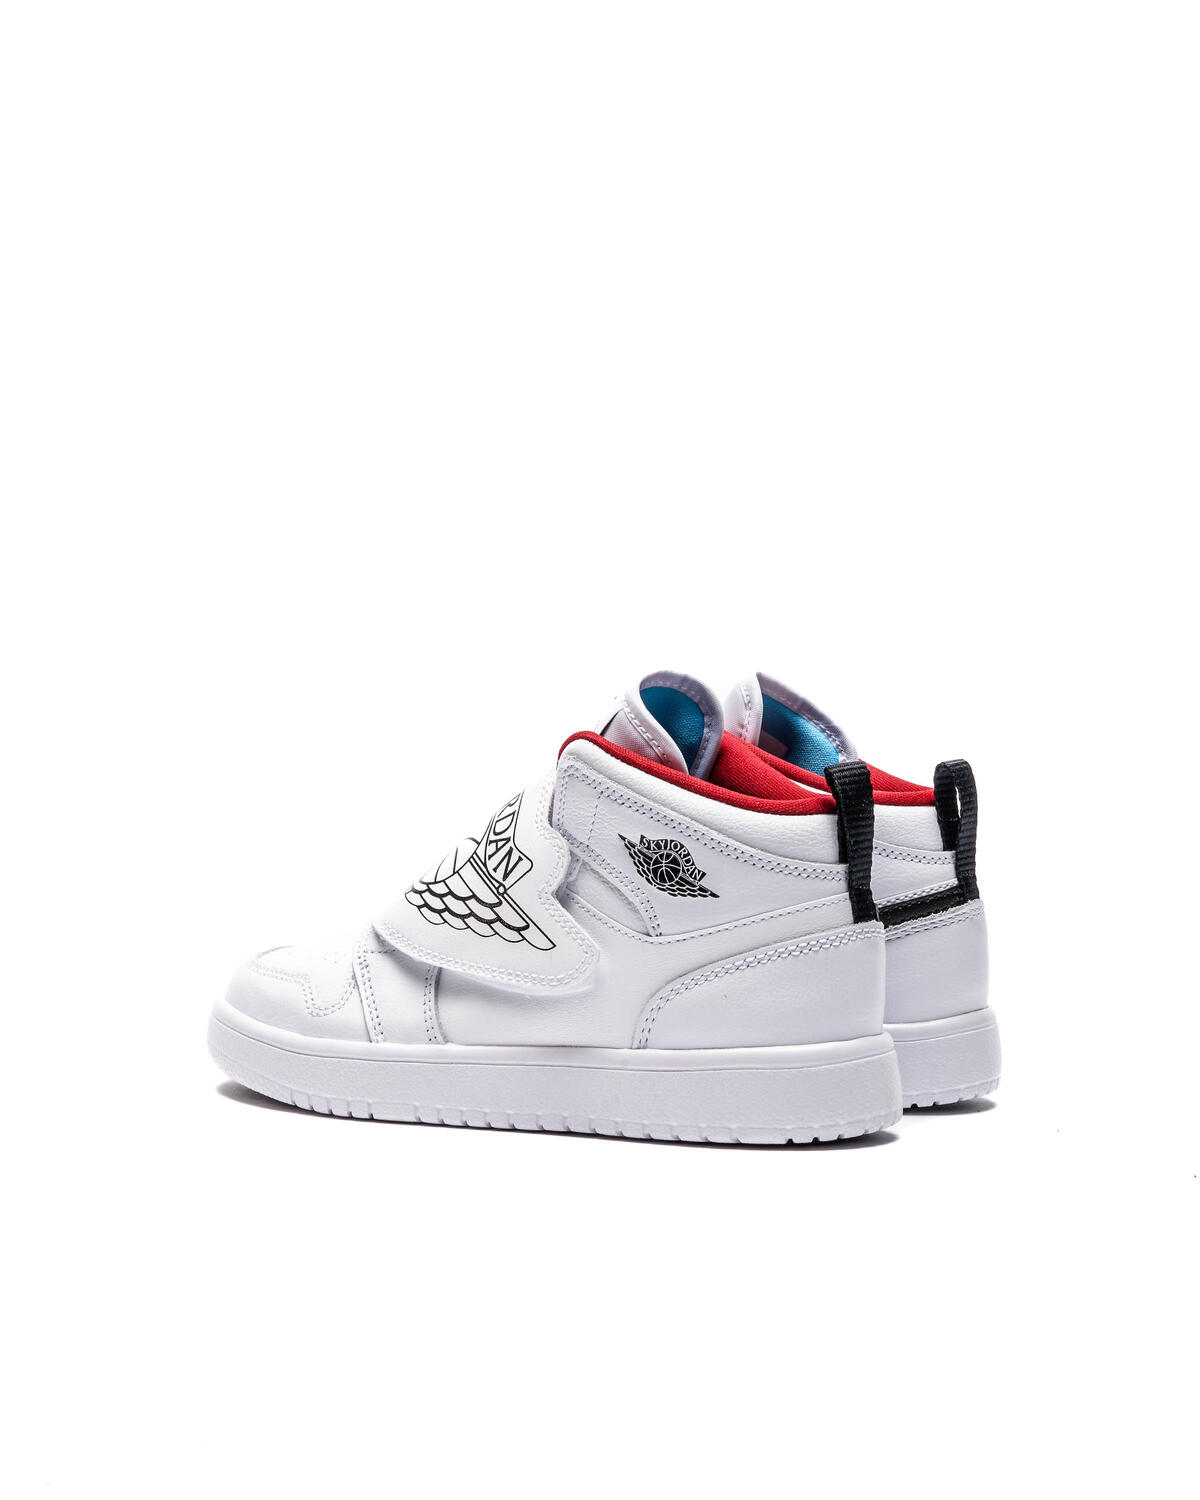 Scarpe Sneakers Nike Sky Jordan 1 Jr Ps BQ7197-041